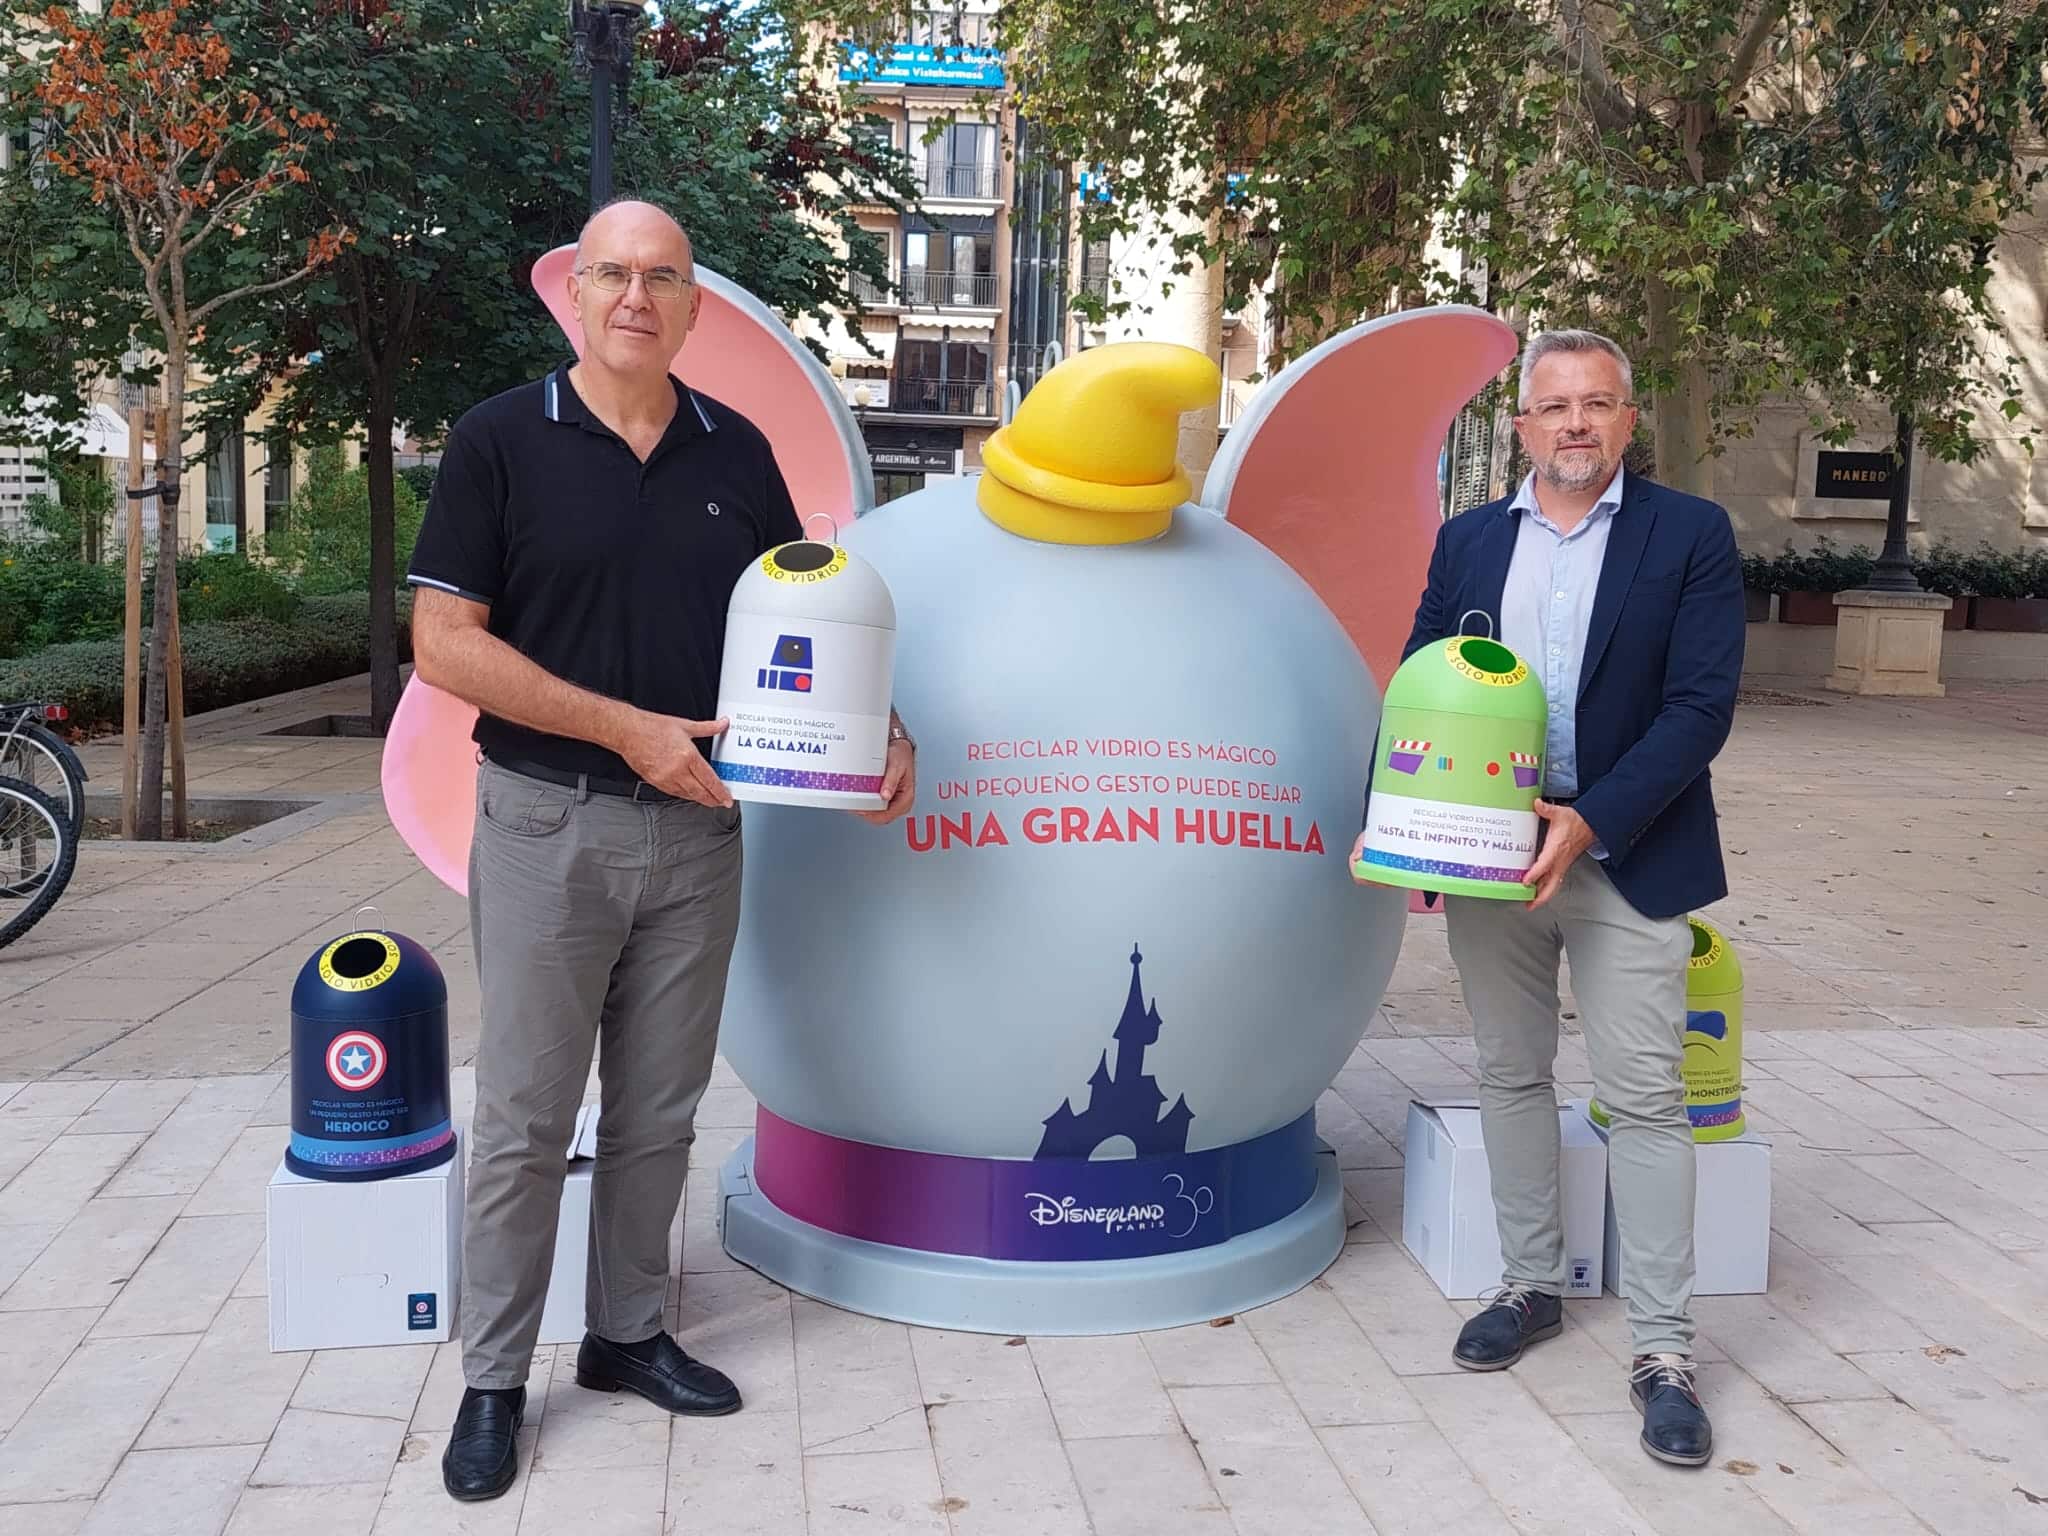 Ecovidrio y Ayuntamiento de Alicante lanzan una campaña de reciclaje con cuatro iglús tematizados con personajes Disney dirigida a familias con niños